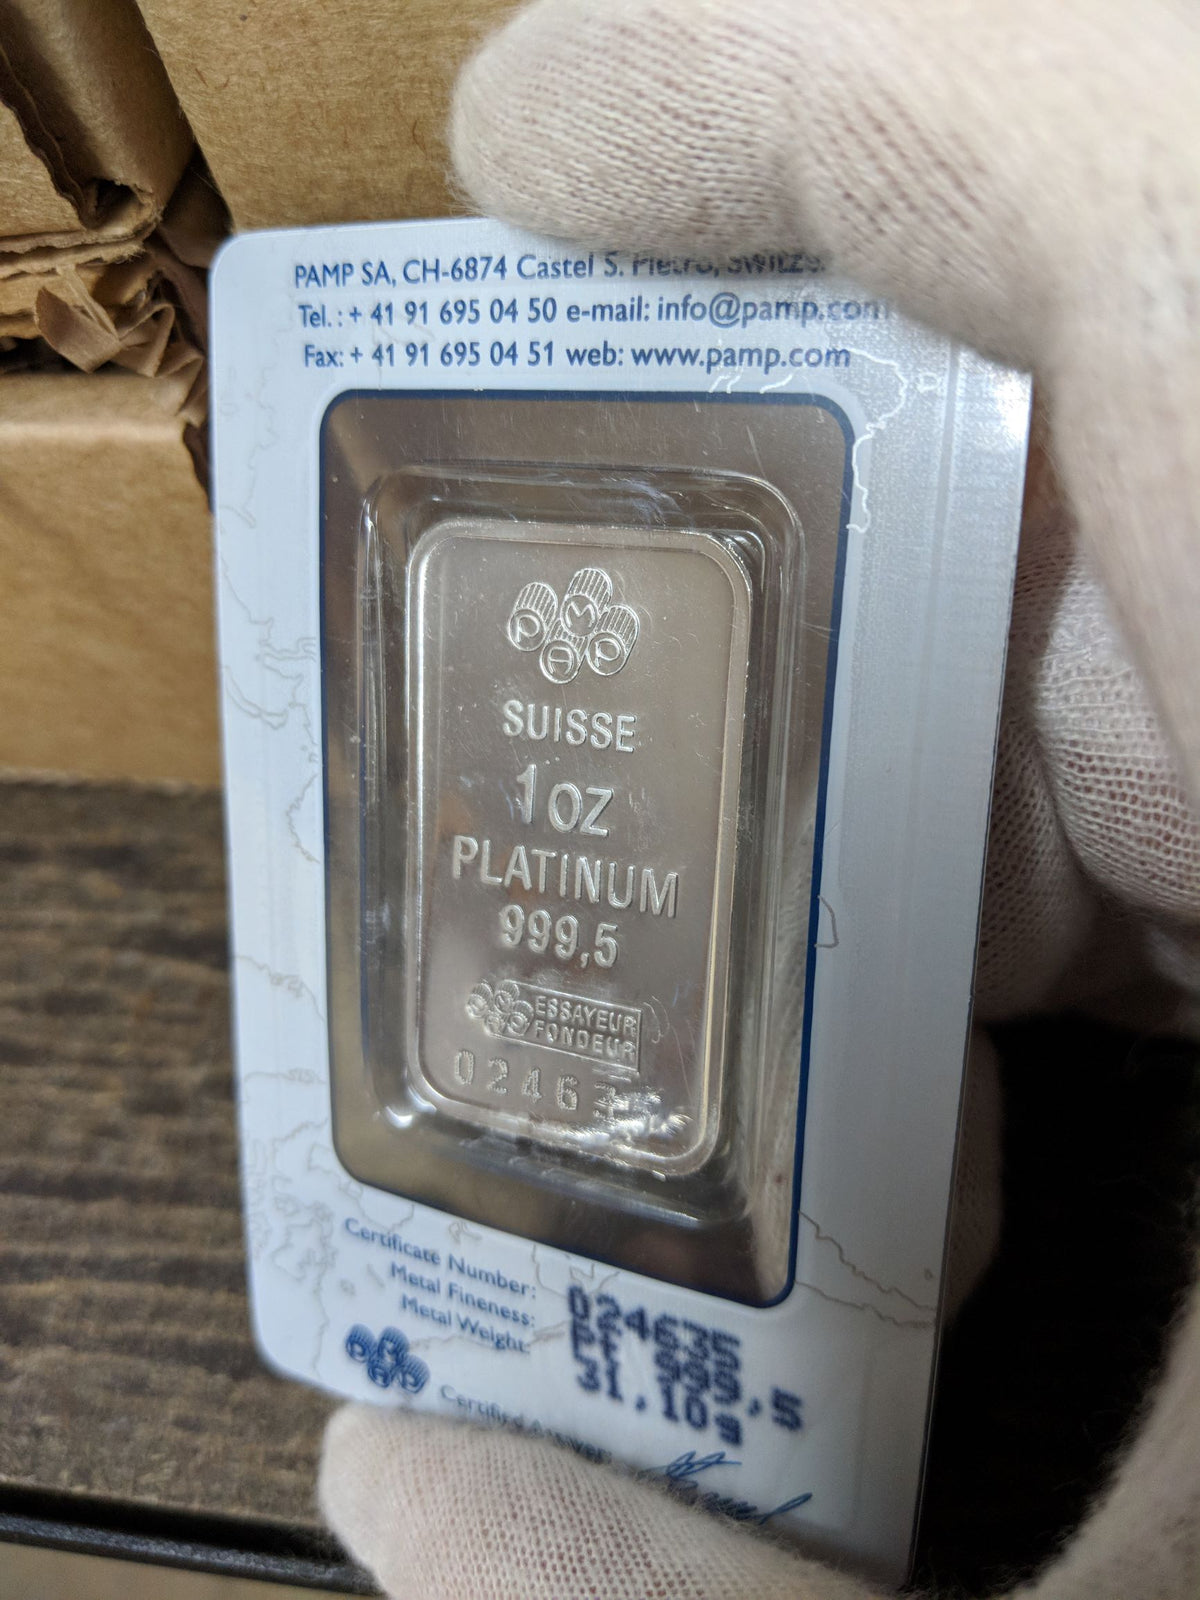 1 oz of pure Platinum